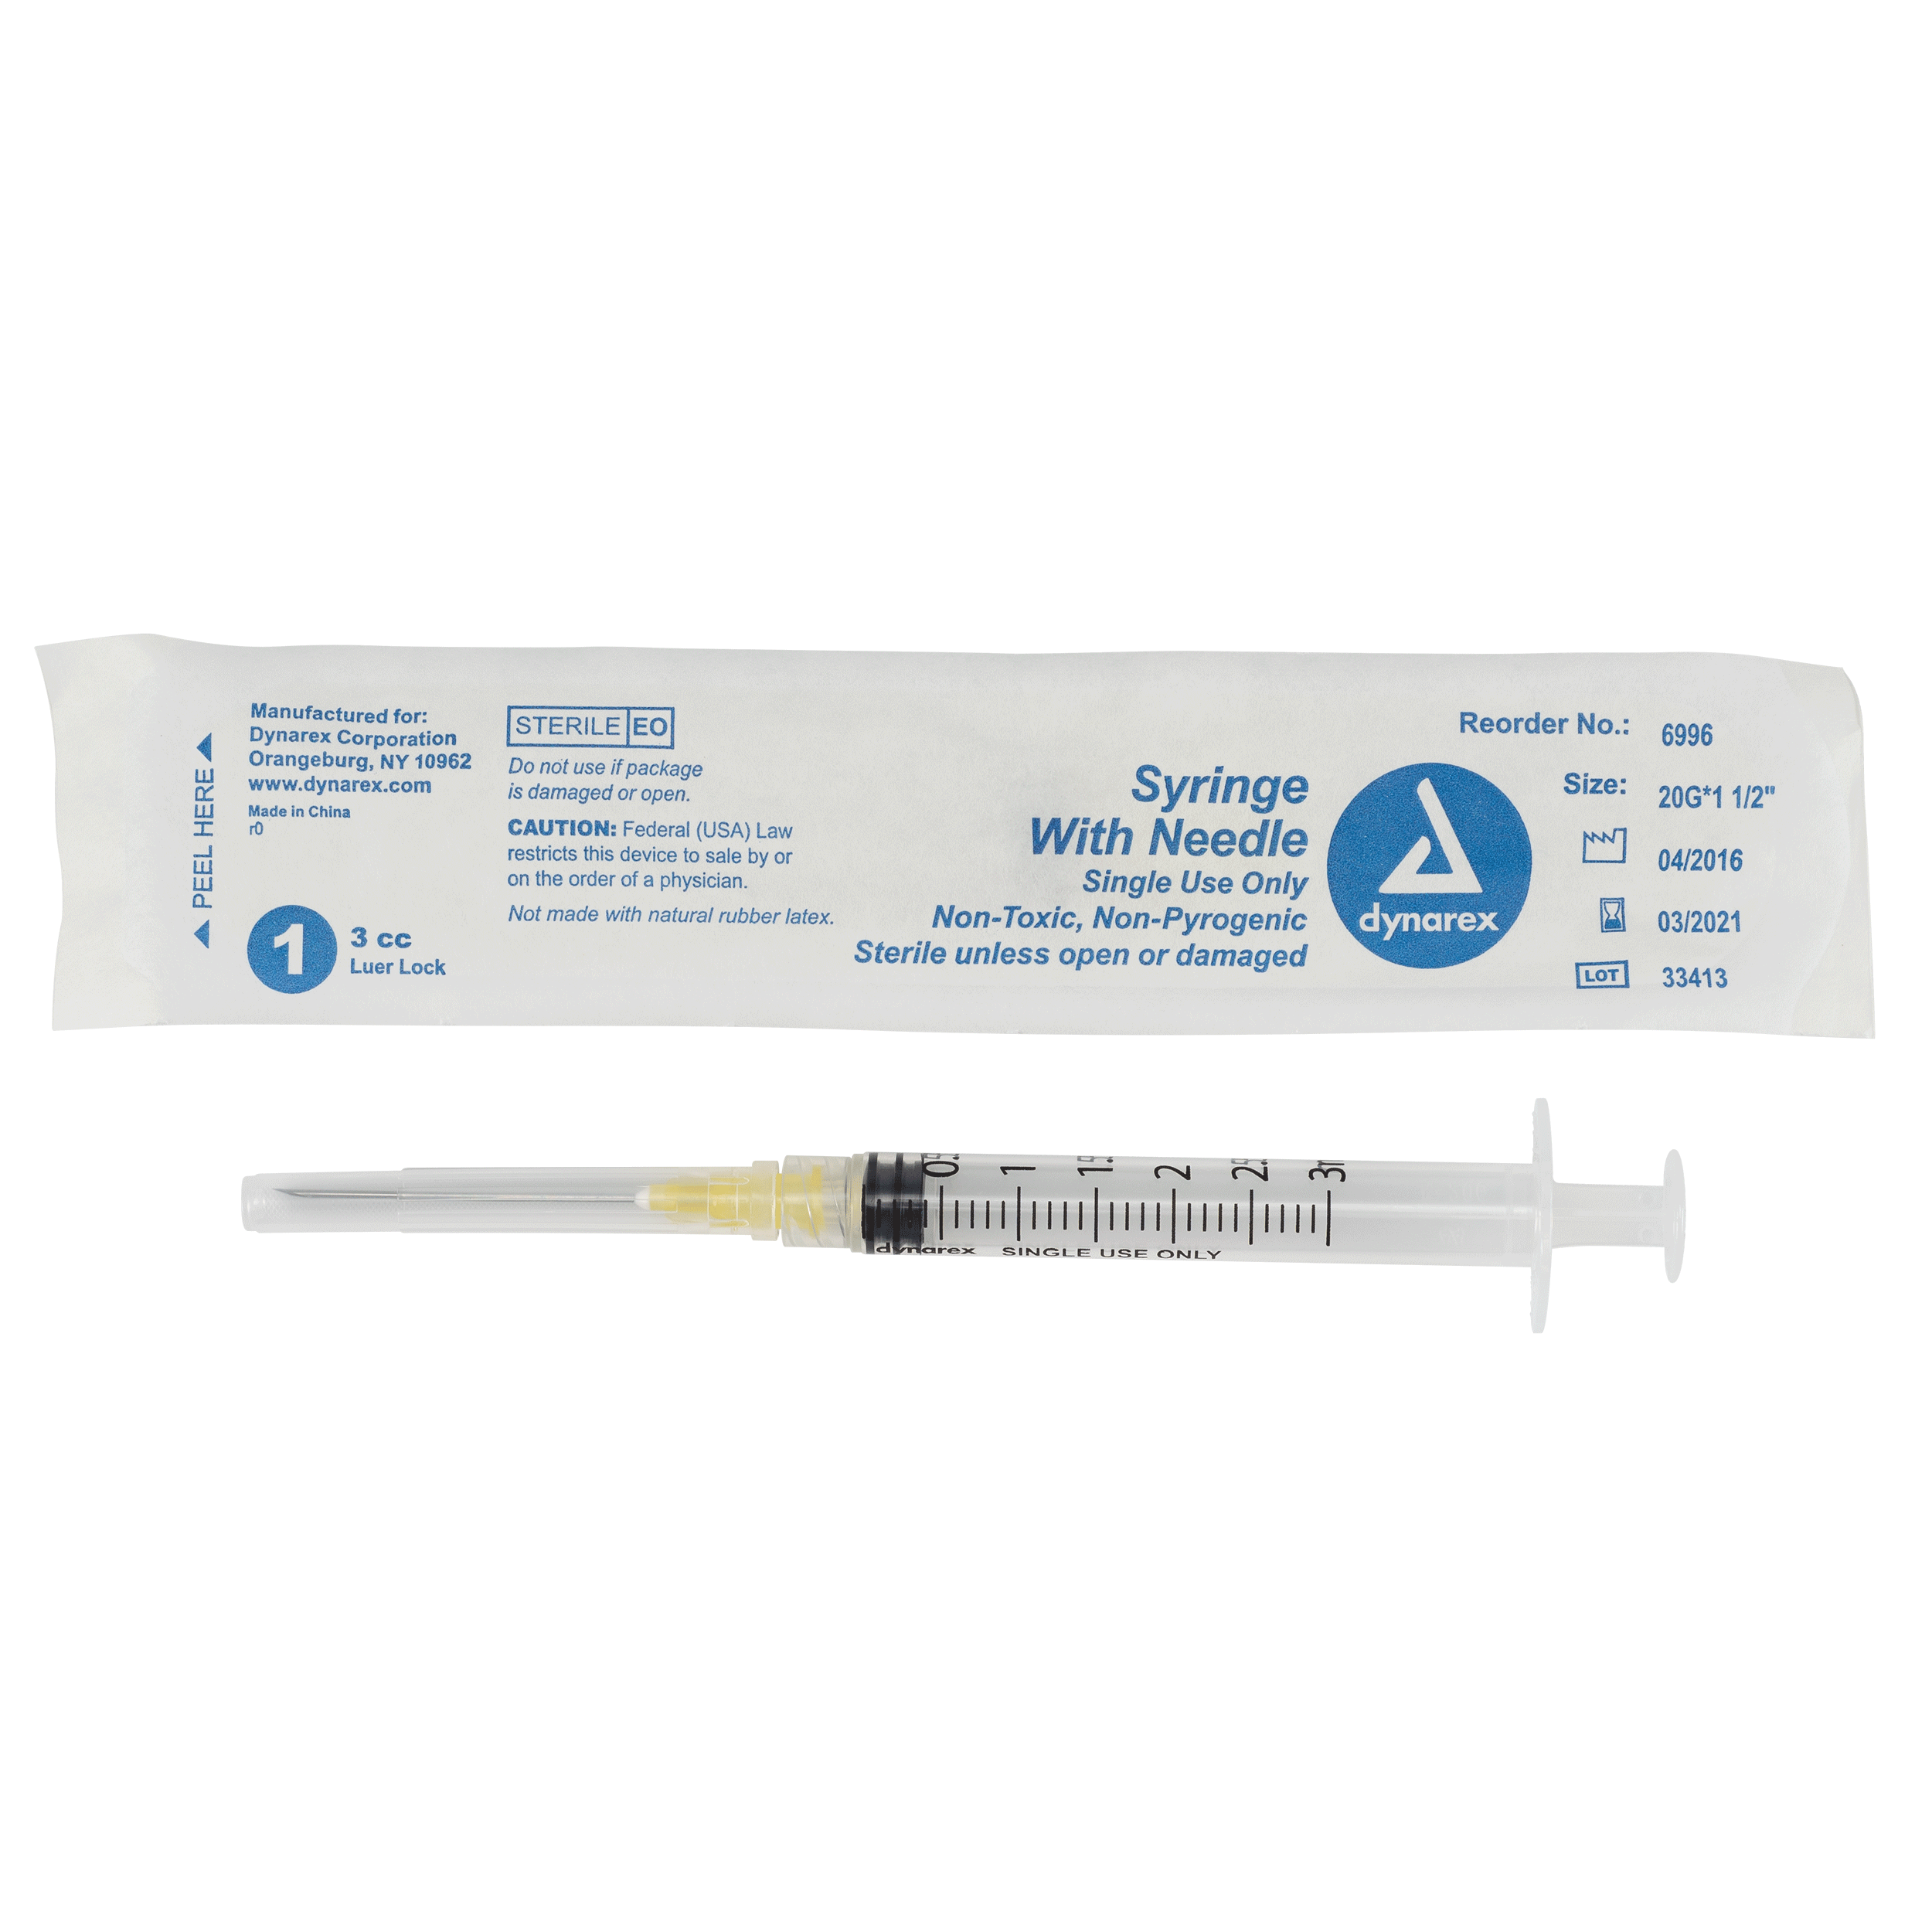 Syringes With Needle - 3cc - 20G. 1.5